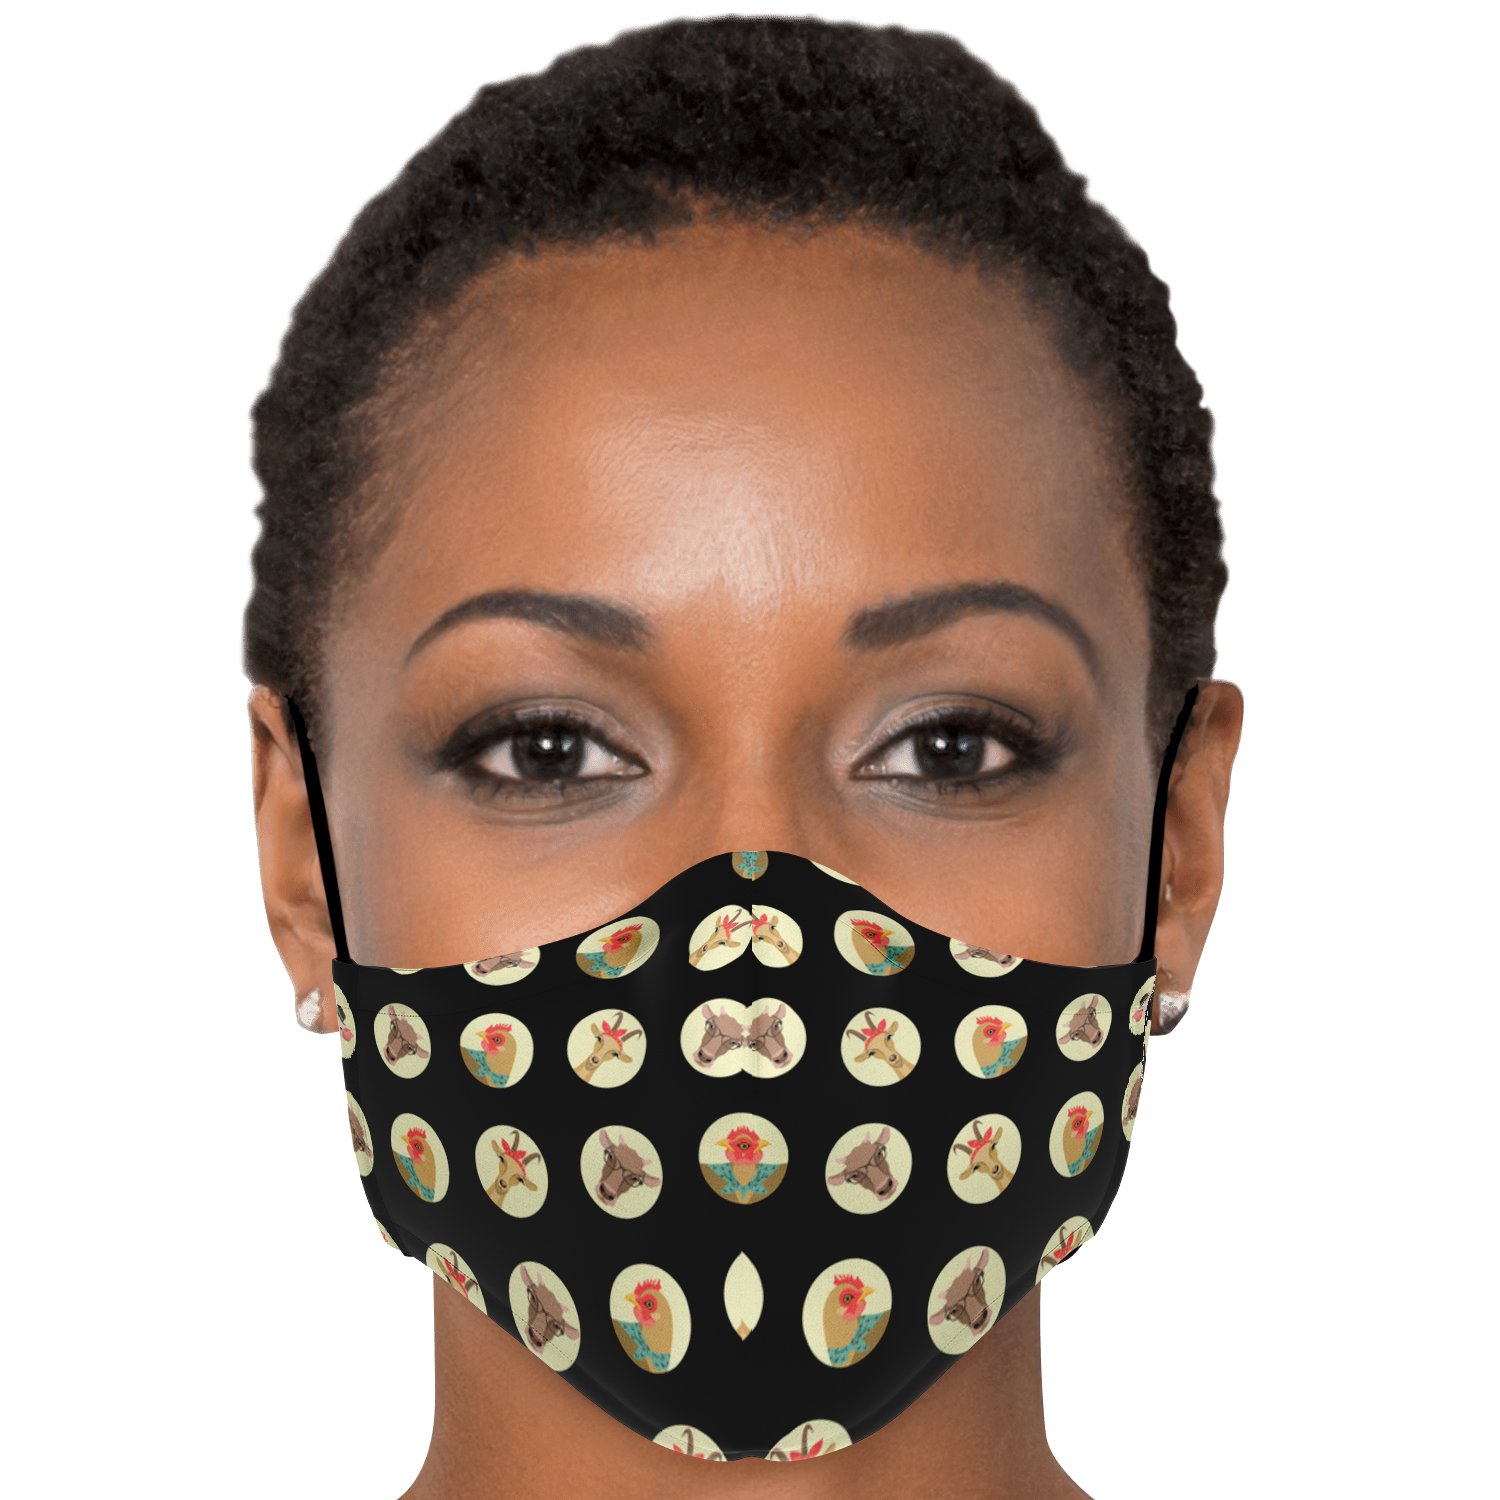 3pcs - Adult Fashion Face Mask / +$6 - 15pcs - PM 2.5 Carbon Filters Official COW PRINT Merch